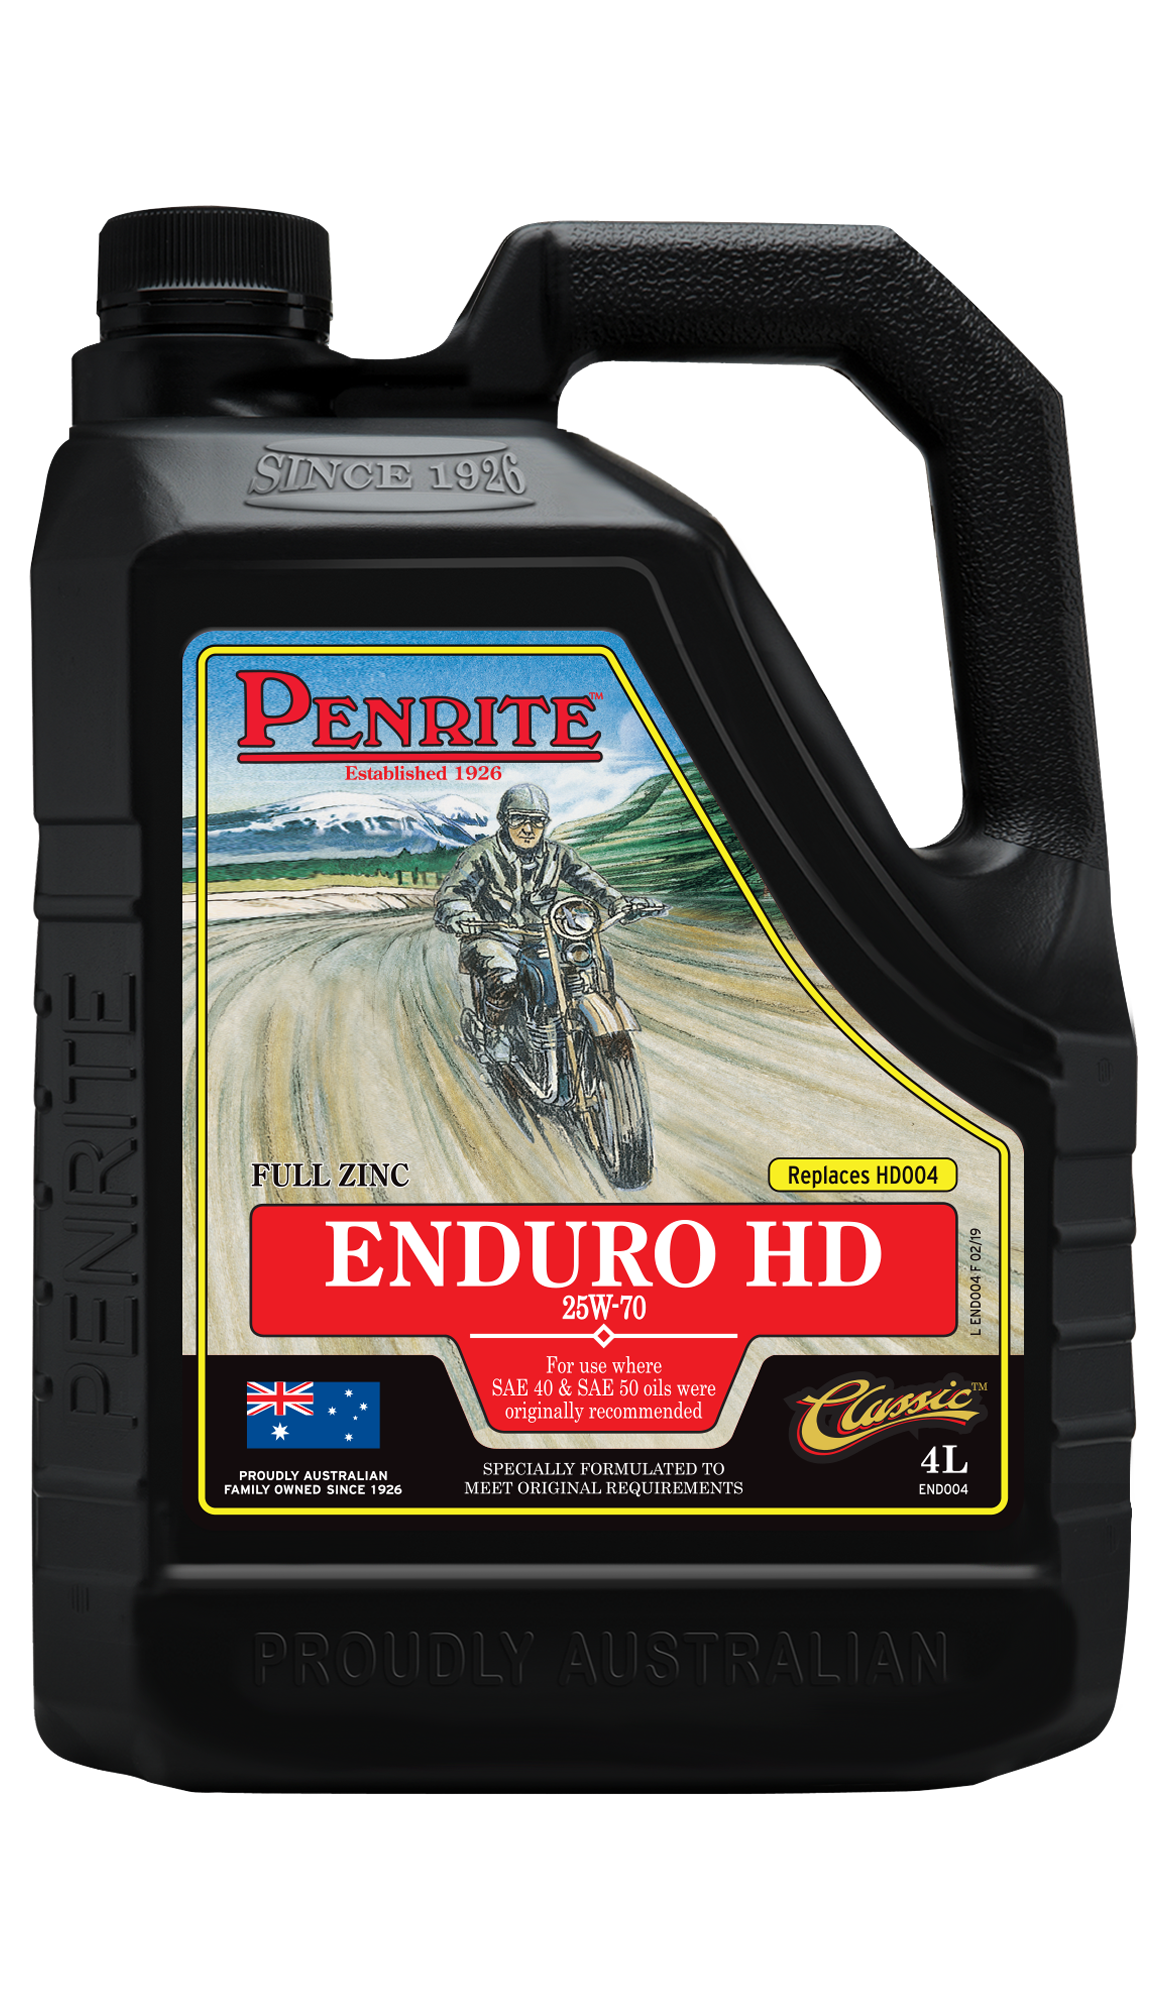 Penrite Enduro HD 25W-70 4 Stroke Mineral Engine Oil 4 Litre